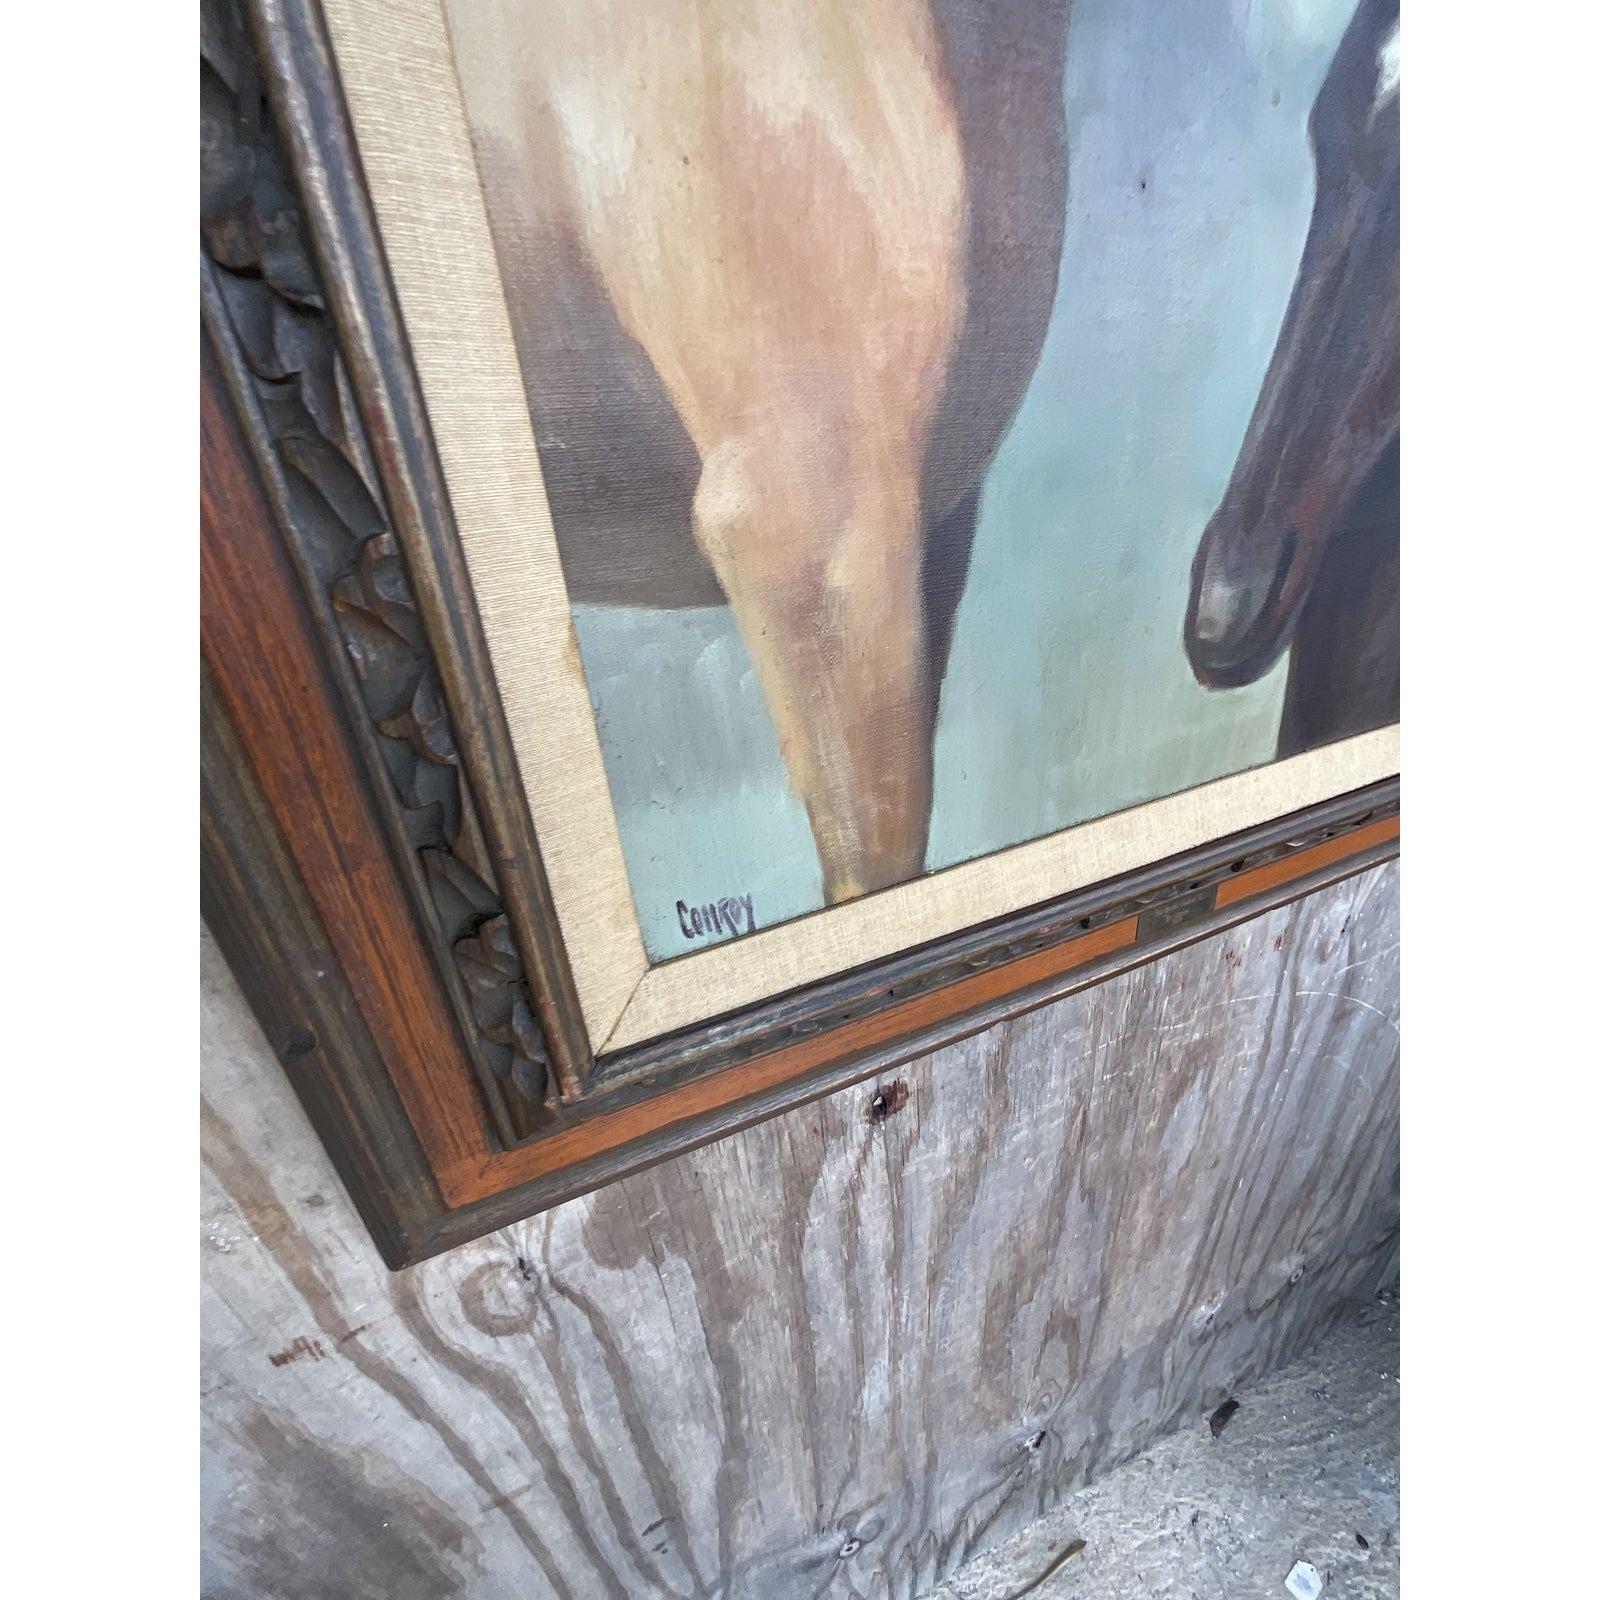 acheter peinture equestre